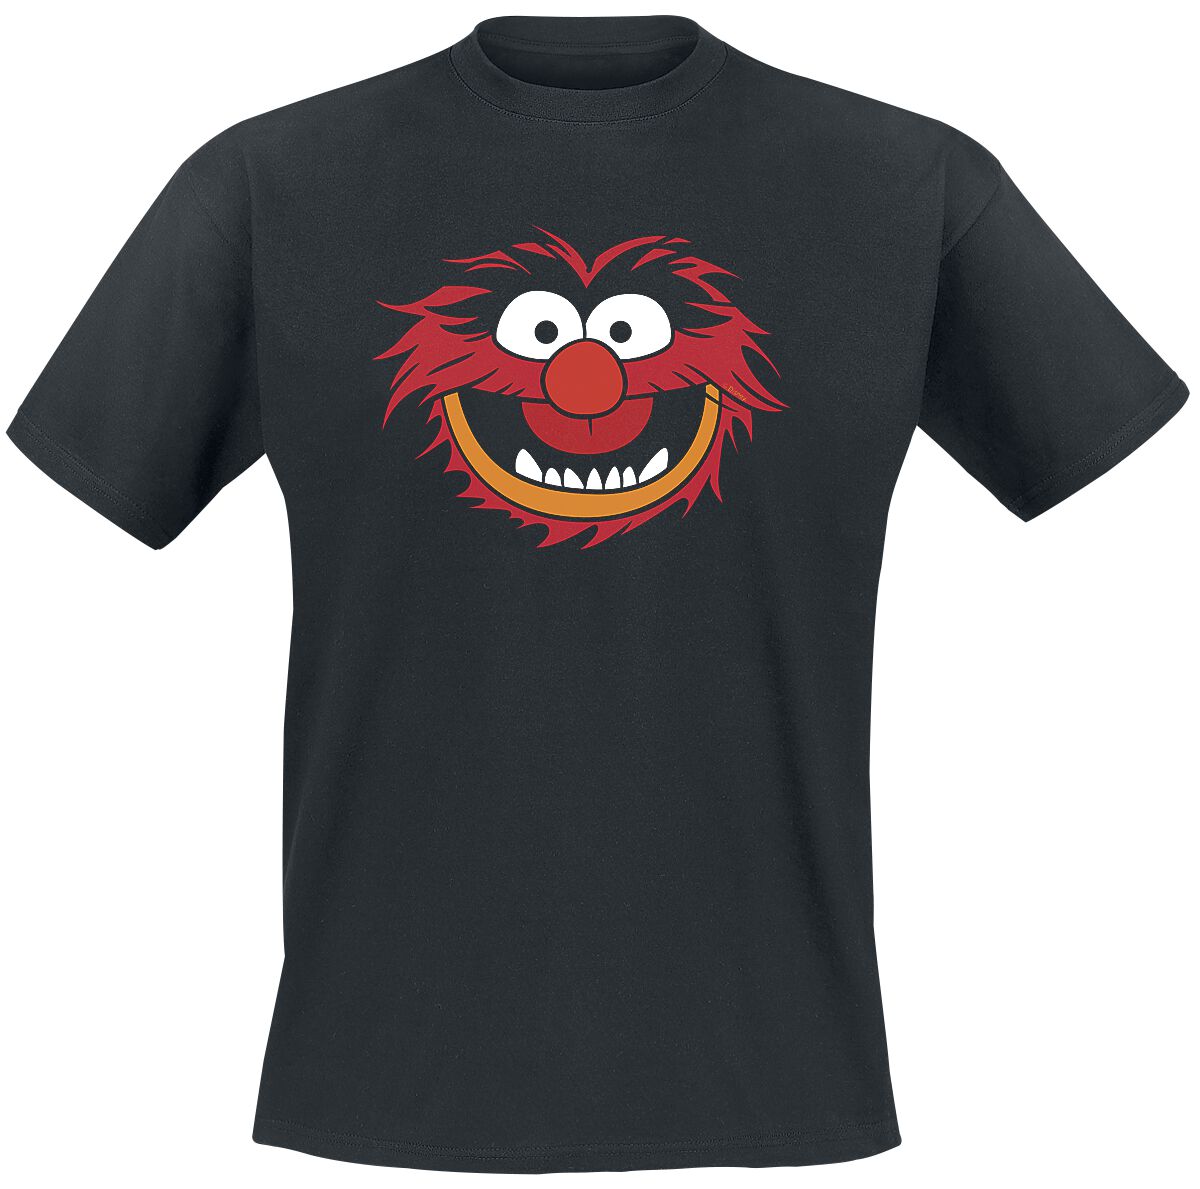 Die Muppets Animal - Gesicht T-Shirt schwarz in L